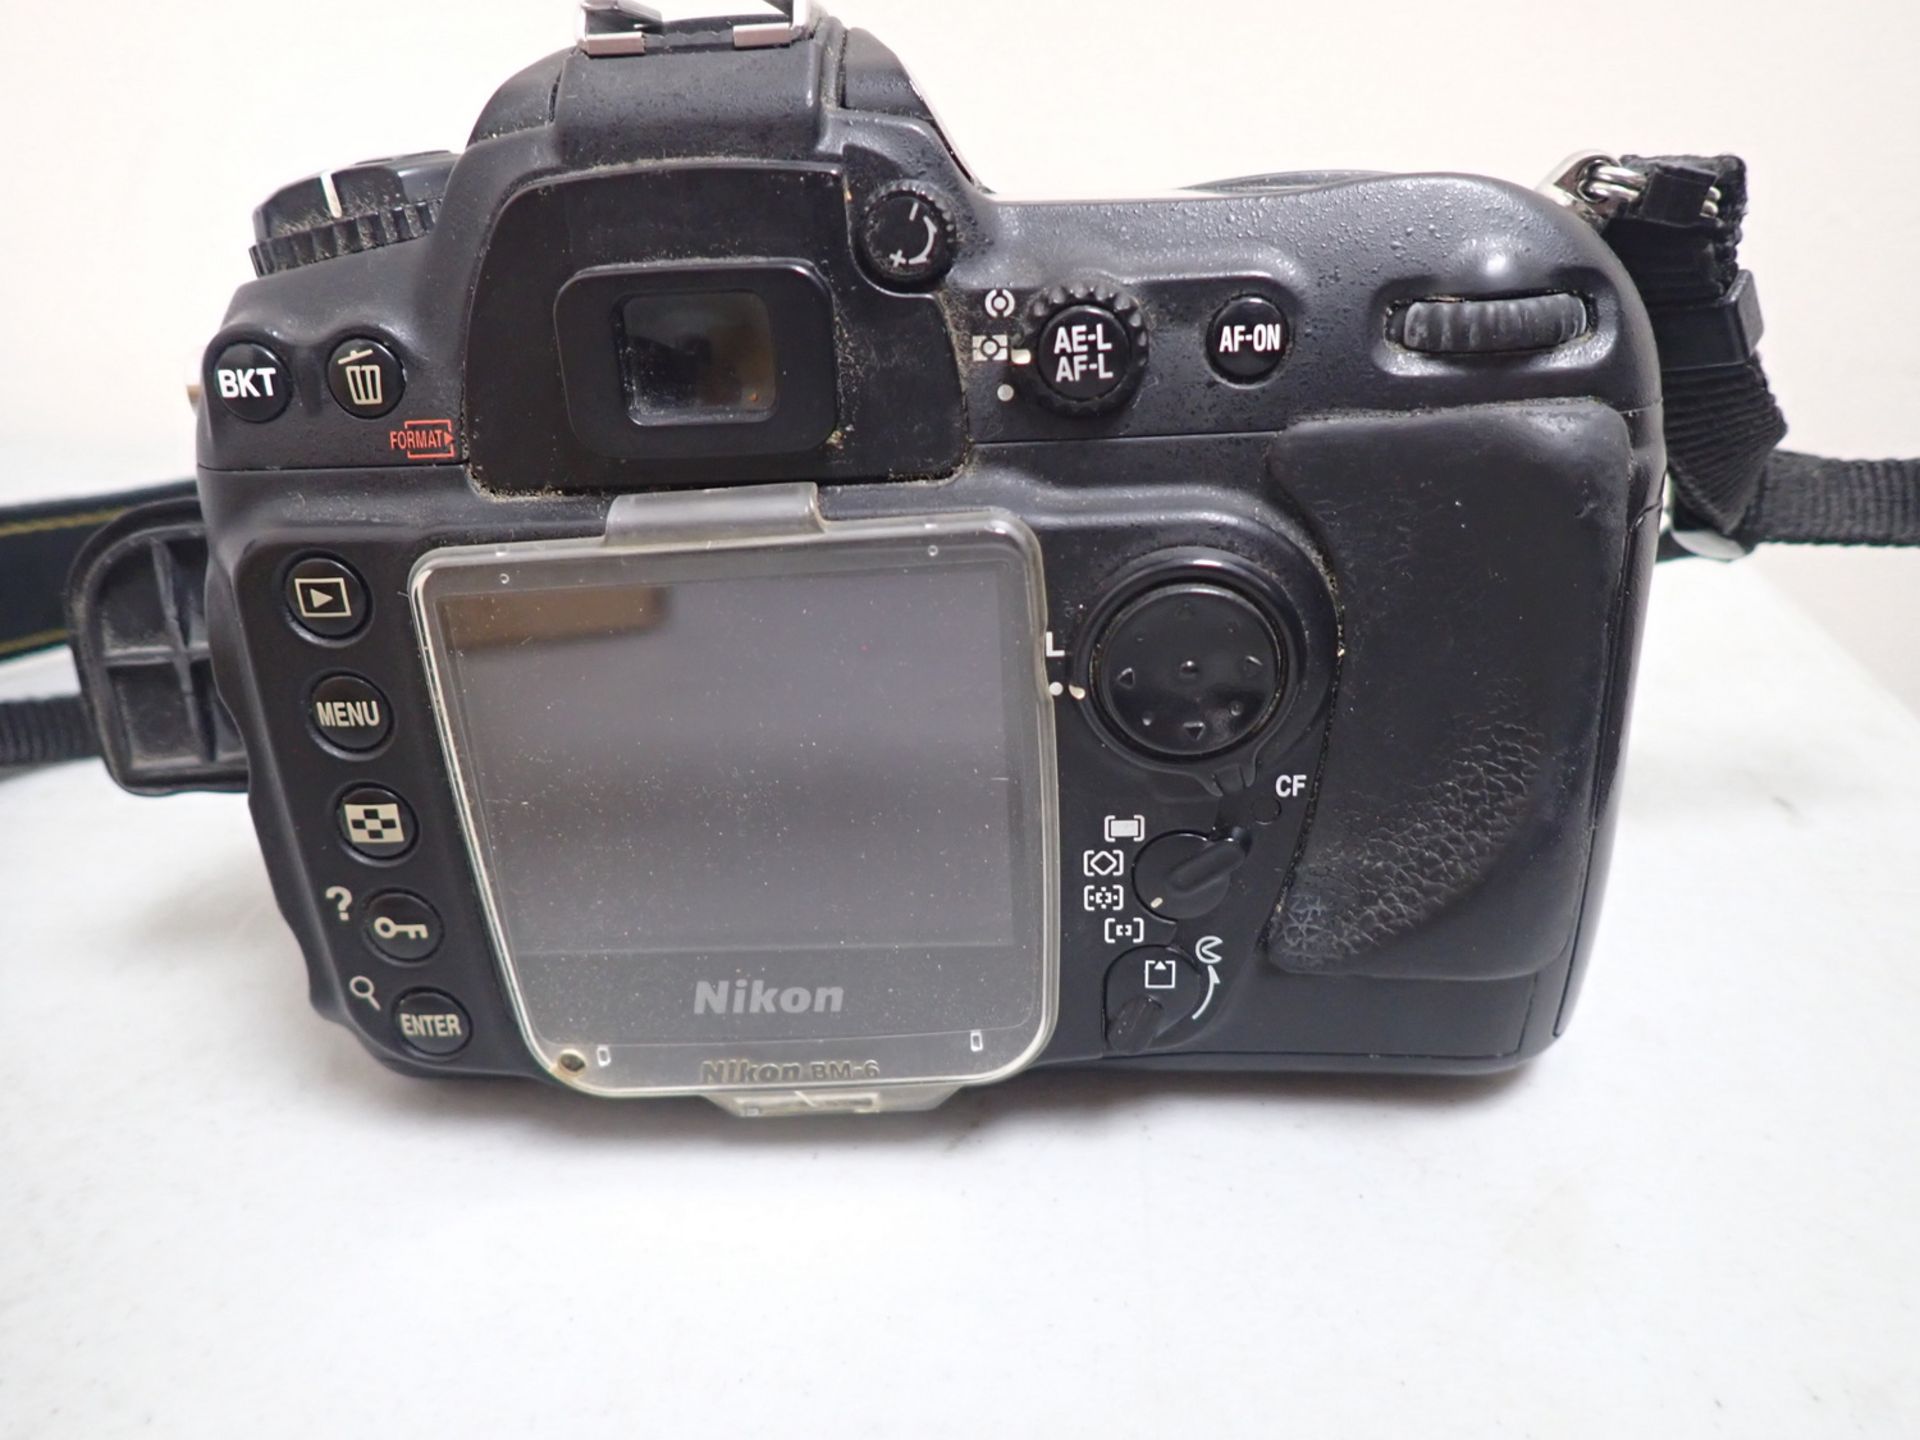 NIKON D200 DSLR 10.2MP CAMERA C/W LENS & BOX - Image 4 of 6